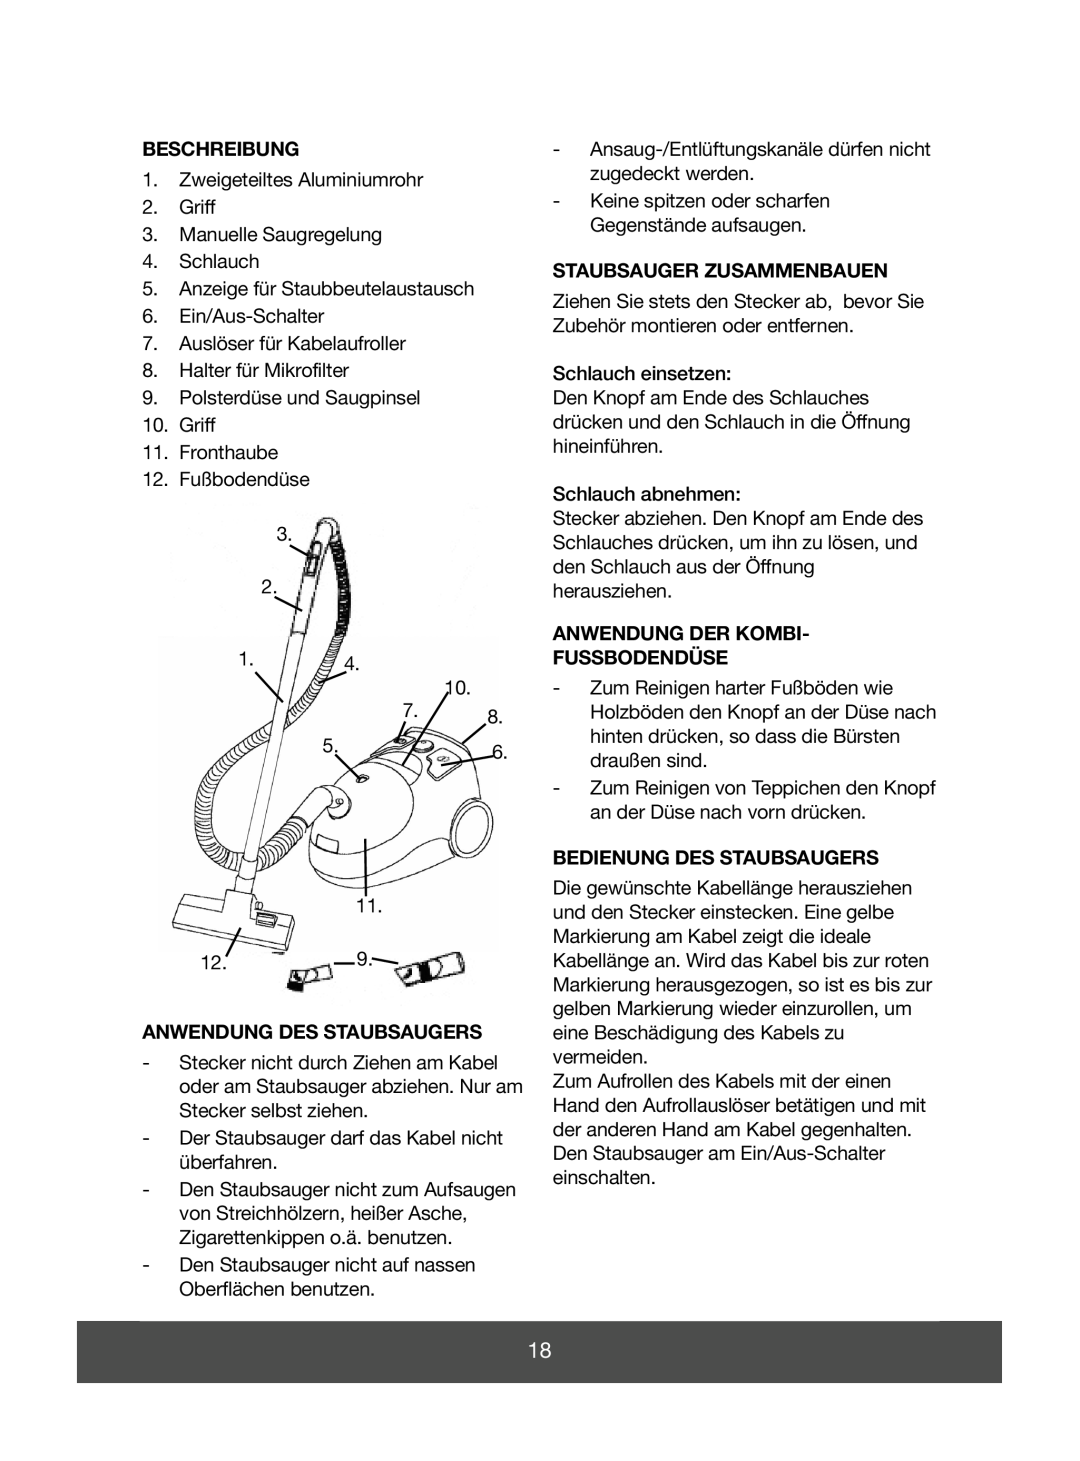 Melissa 640-056 Beschreibung, Anwendung Des Staubsaugers, Staubsauger Zusammenbauen, Anwendung Der Kombi Fussbodendüse 